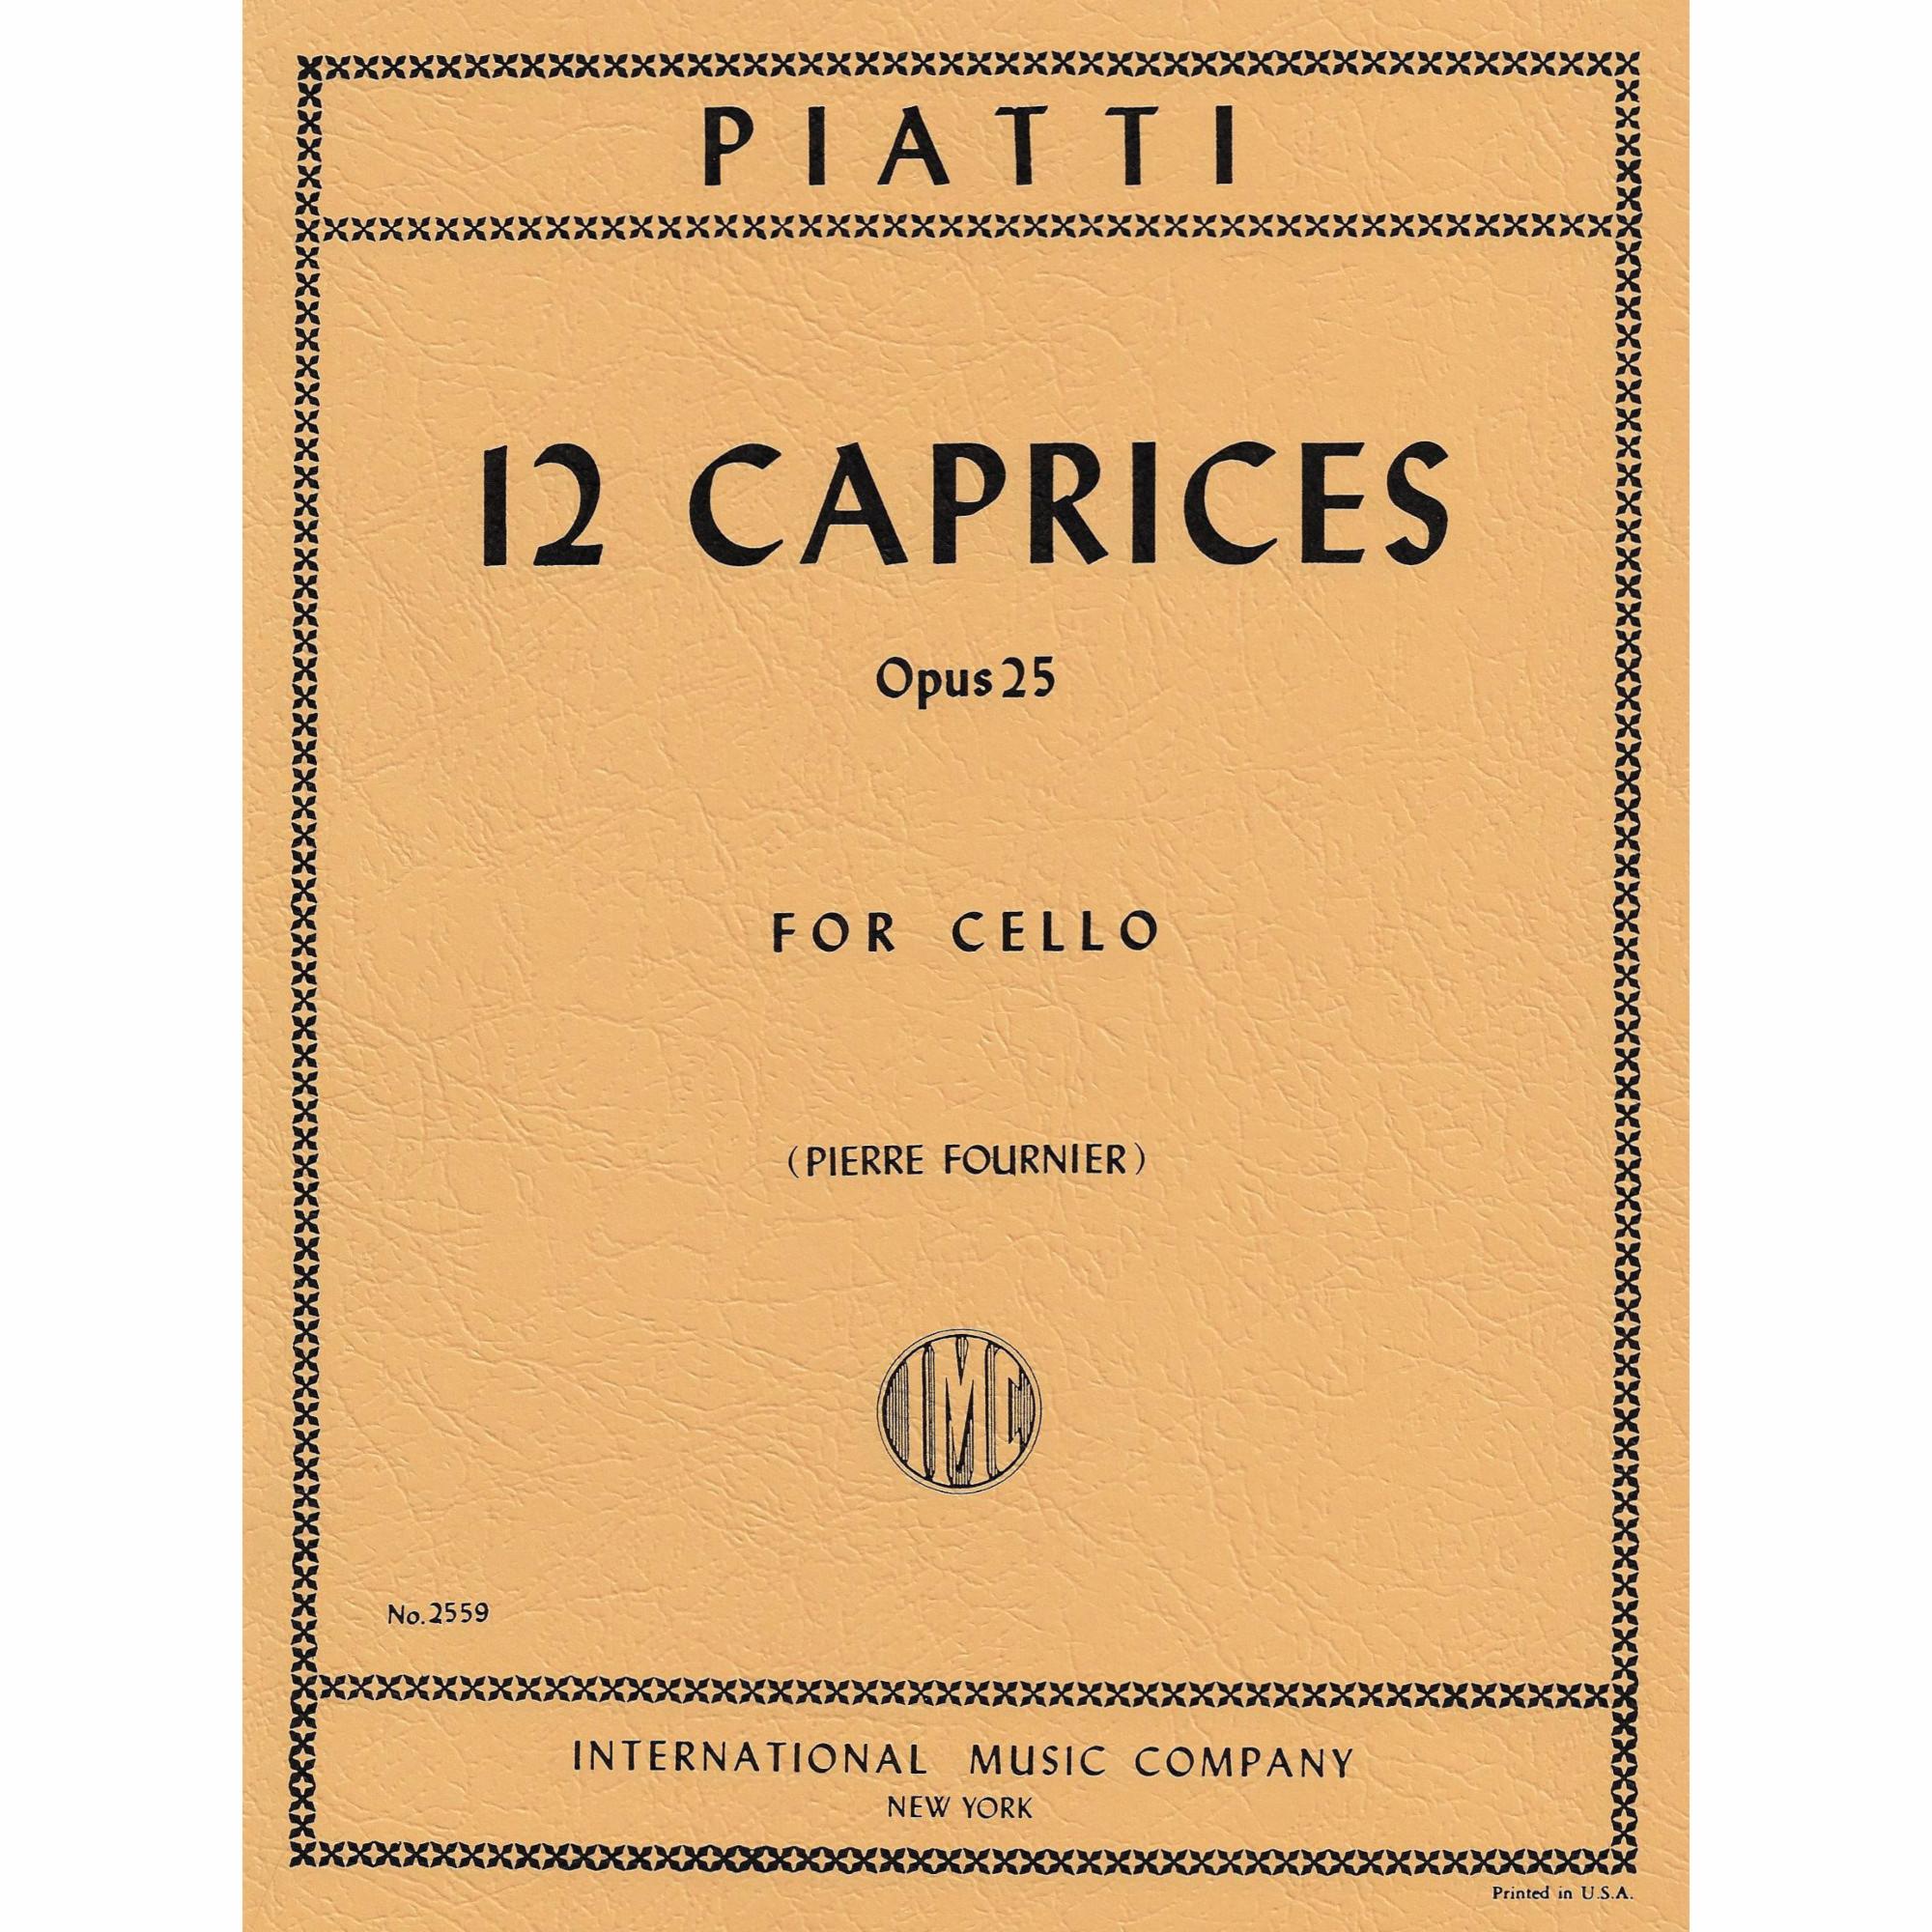 Piatti -- 12 Caprices, Op. 25 for Cello